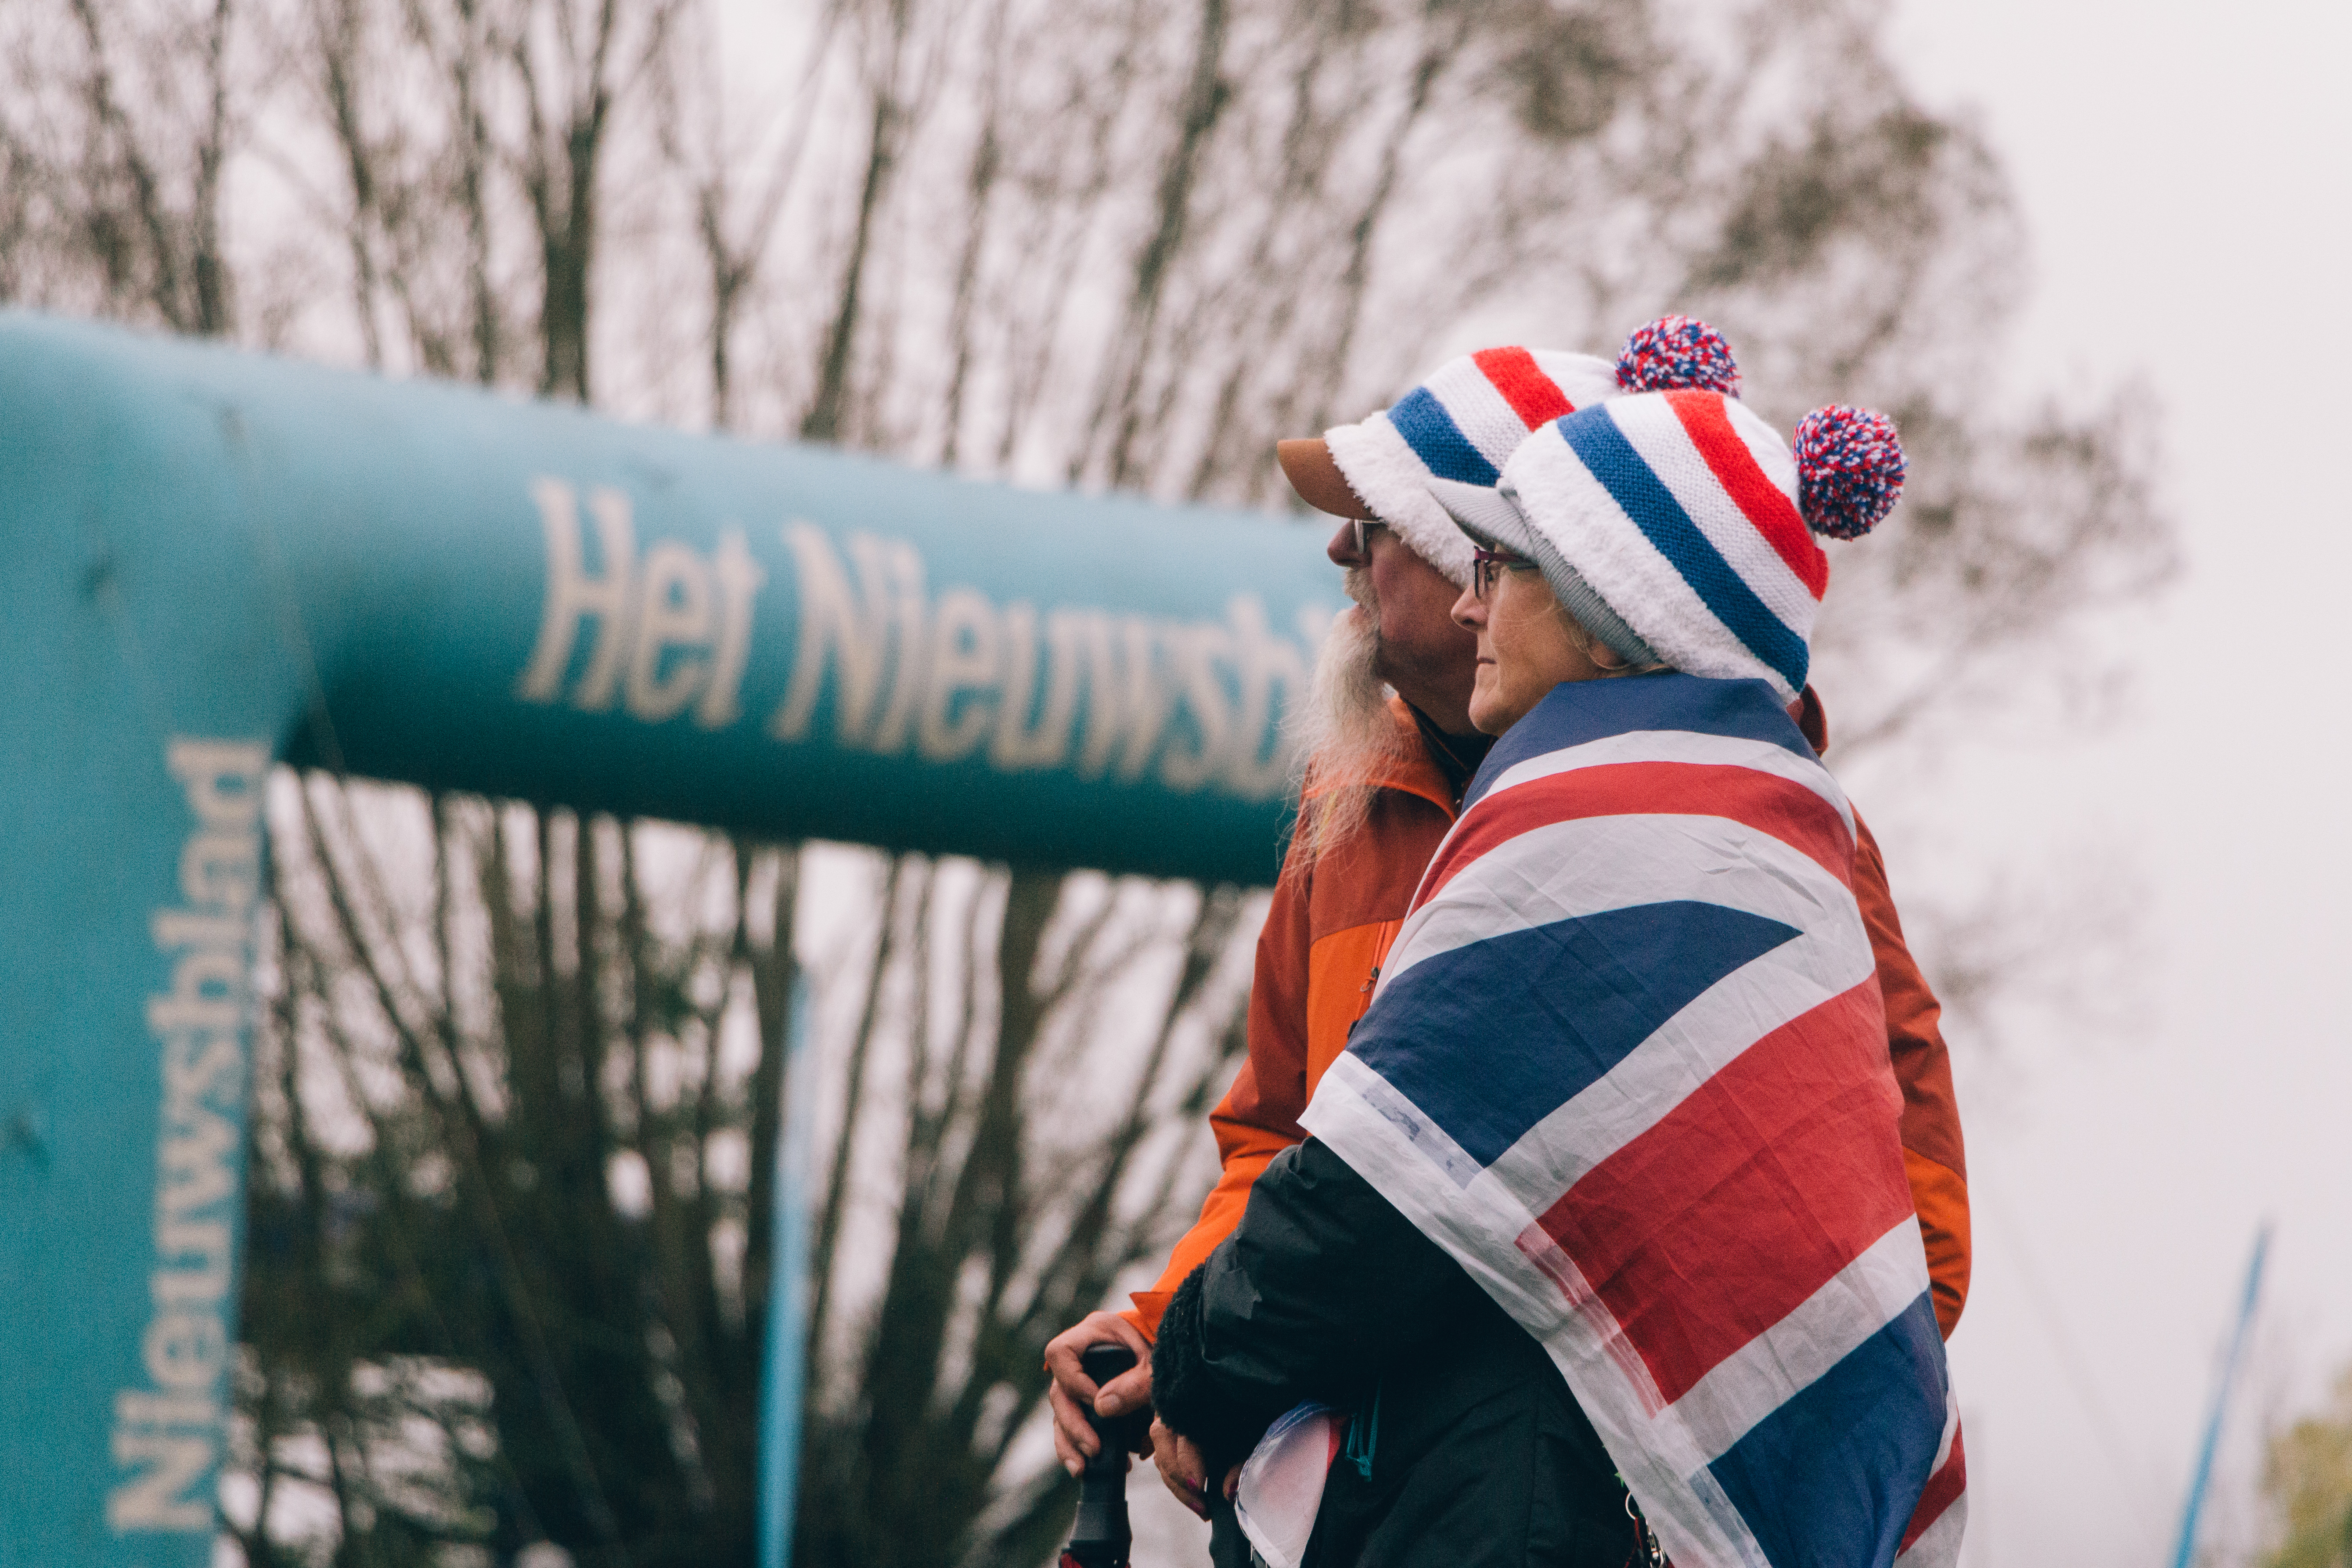 Koppenbergcross 2019